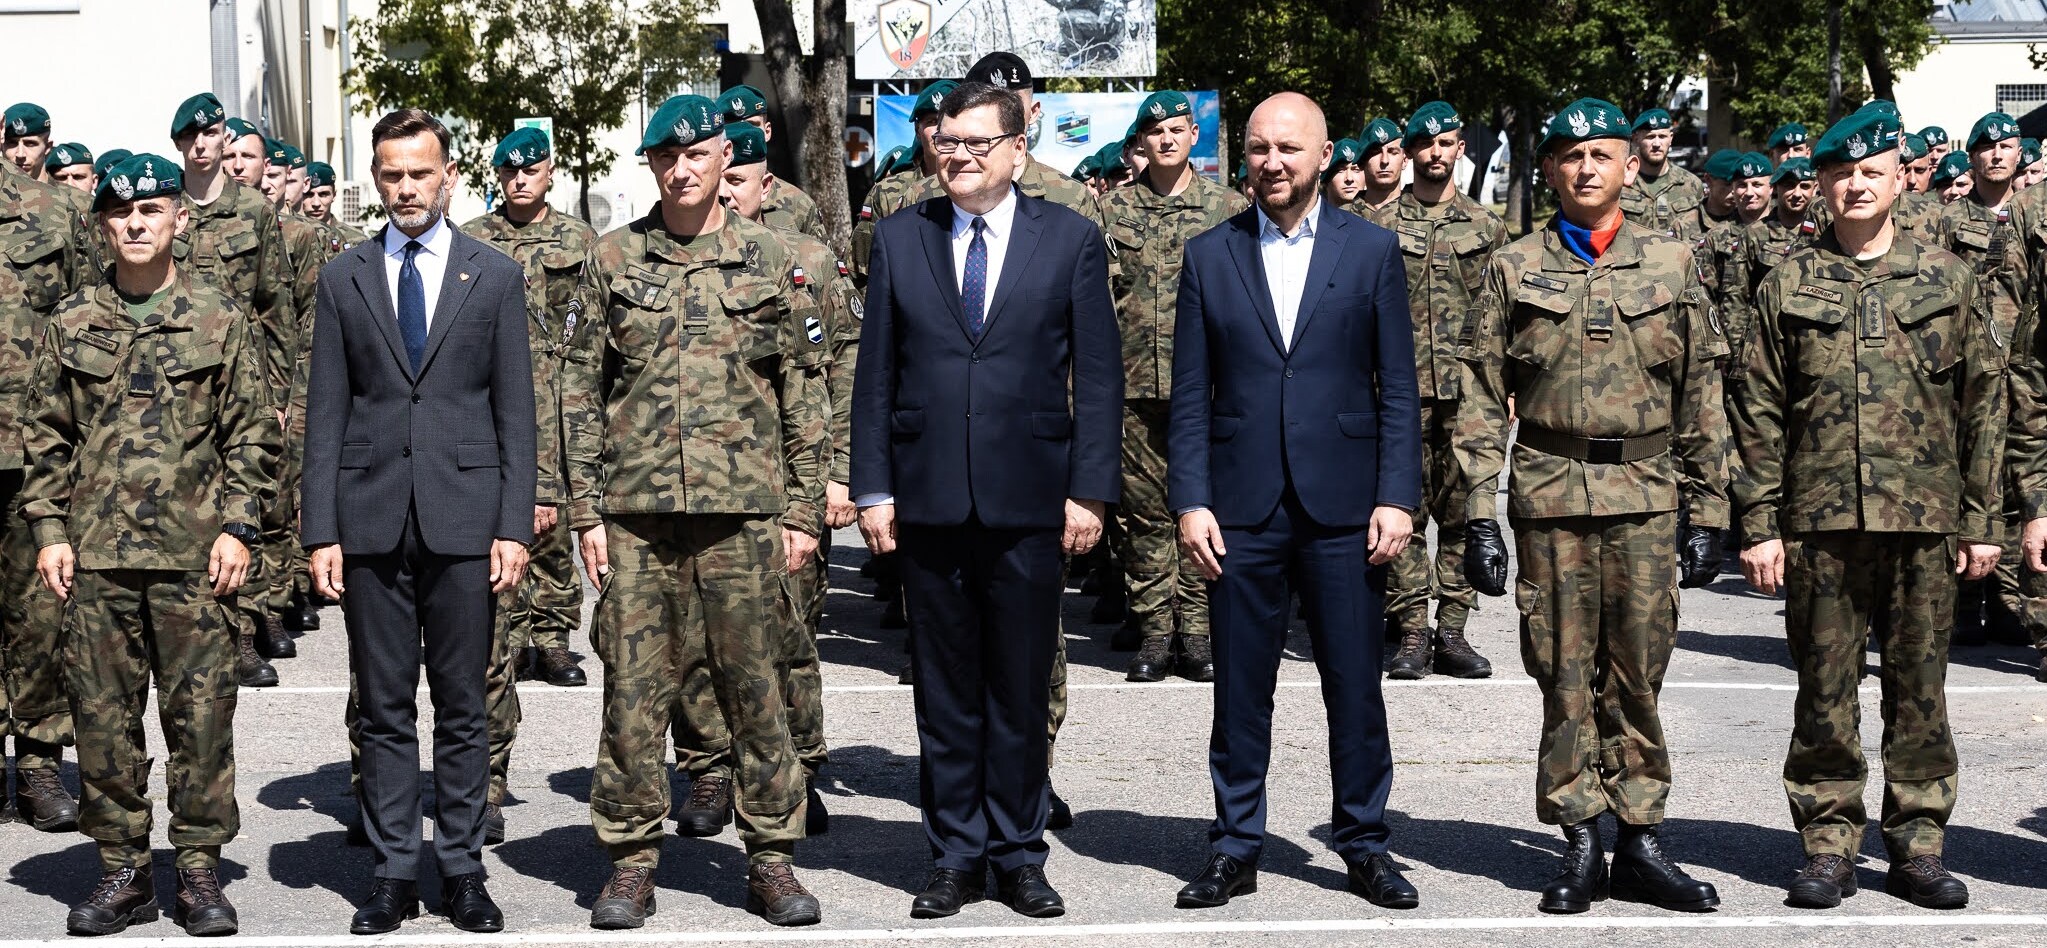 Oficjele stoją na zdjęciu z grupą żołnierzy